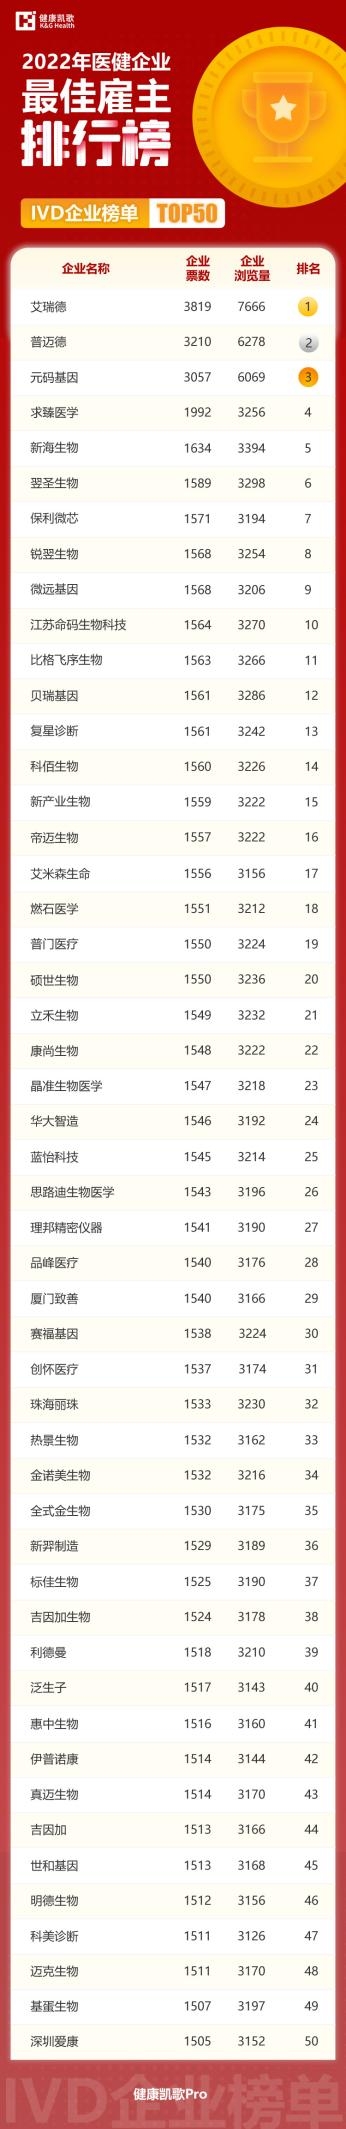 揭晓┃2022年度第二届健康凯歌最佳雇主排行榜TOP50荣誉名单